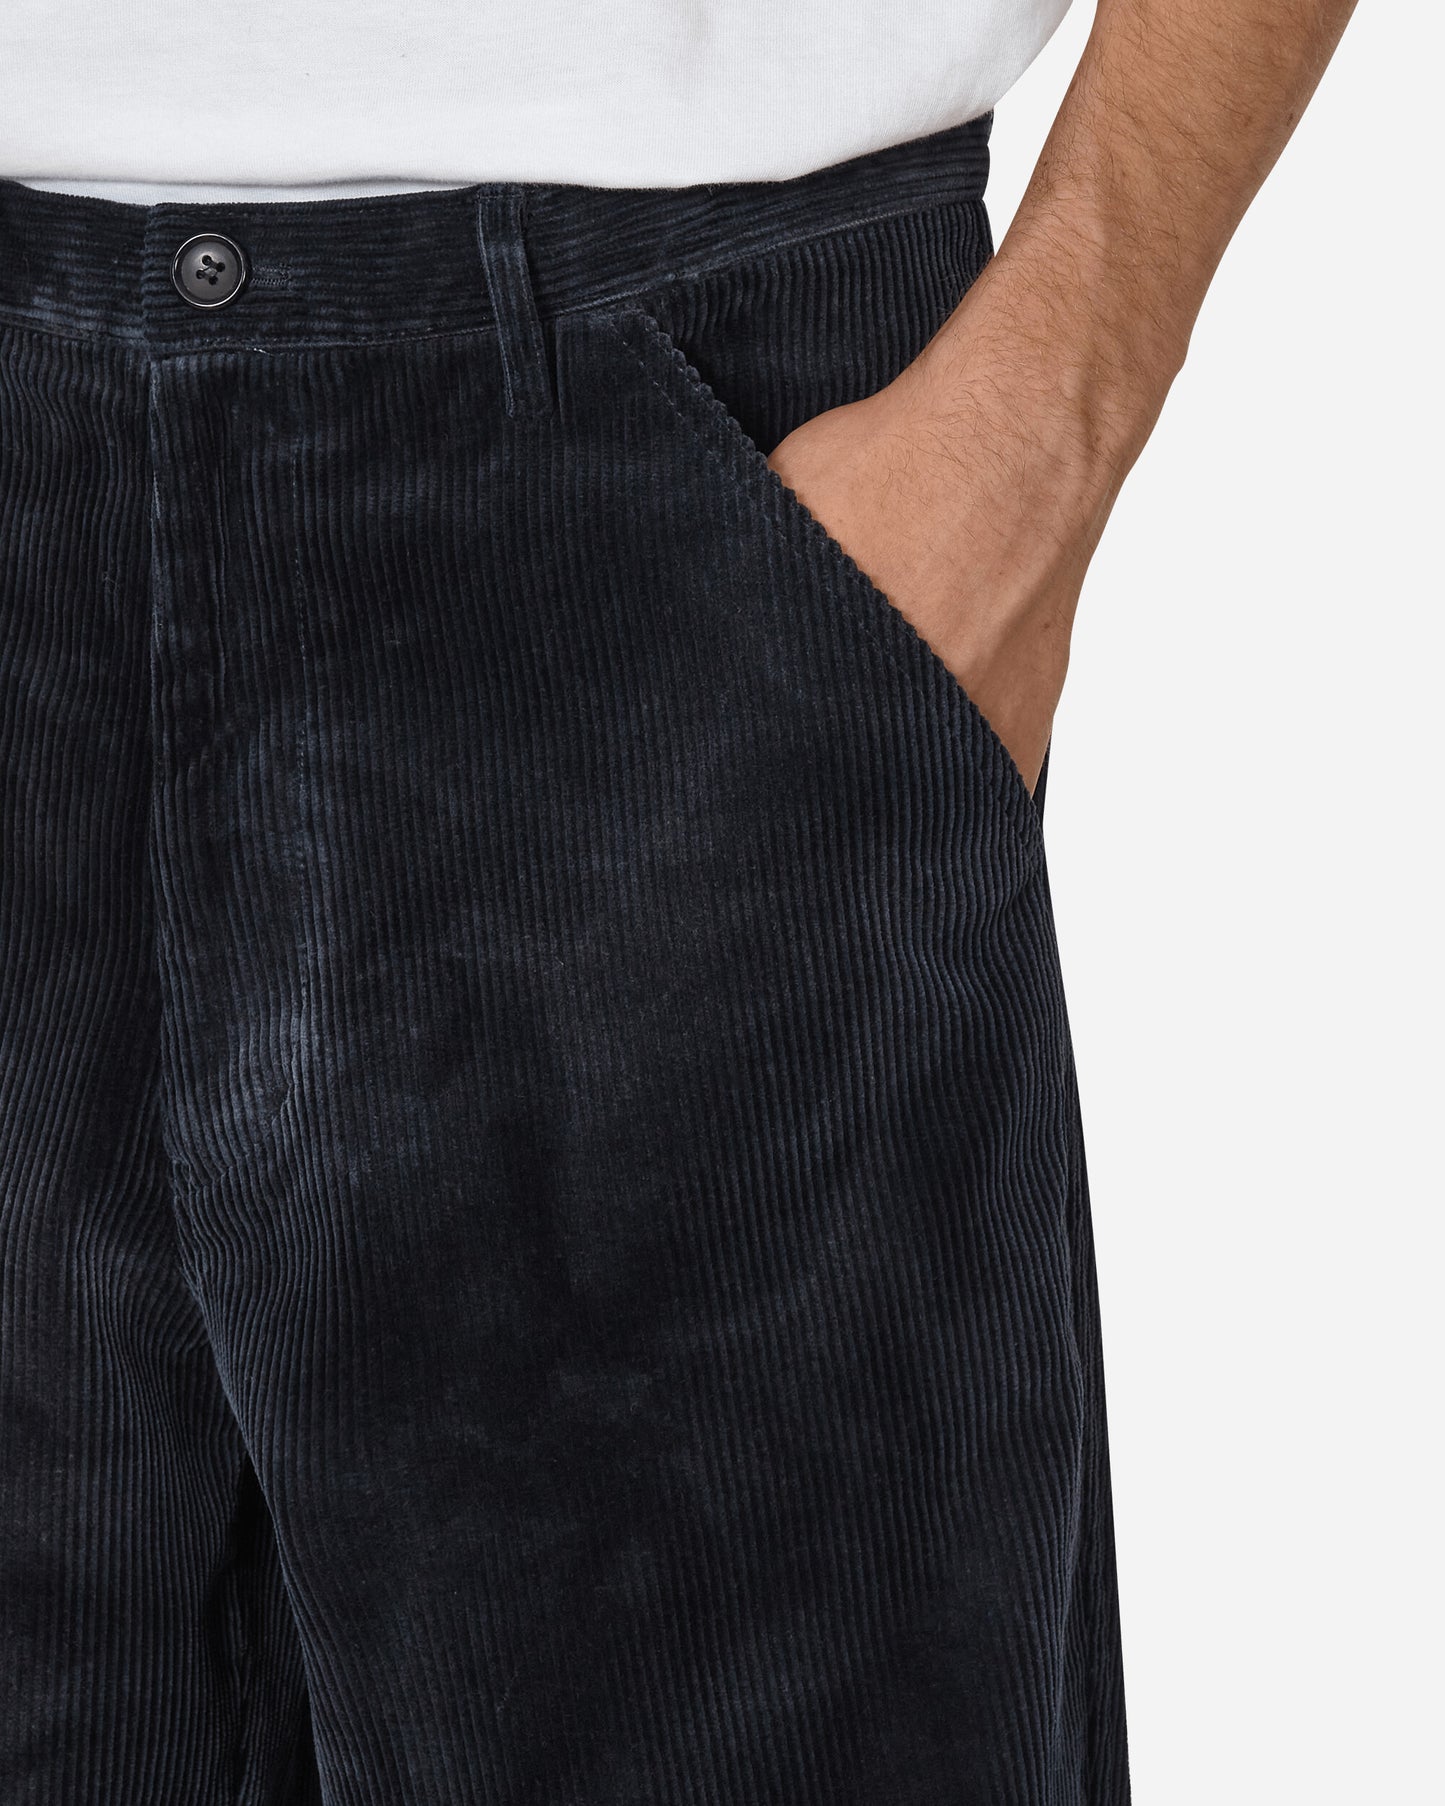 Comme Des Garçons Shirt Mens Pants Woven Navy Pants Trousers FL-P007-W23  1